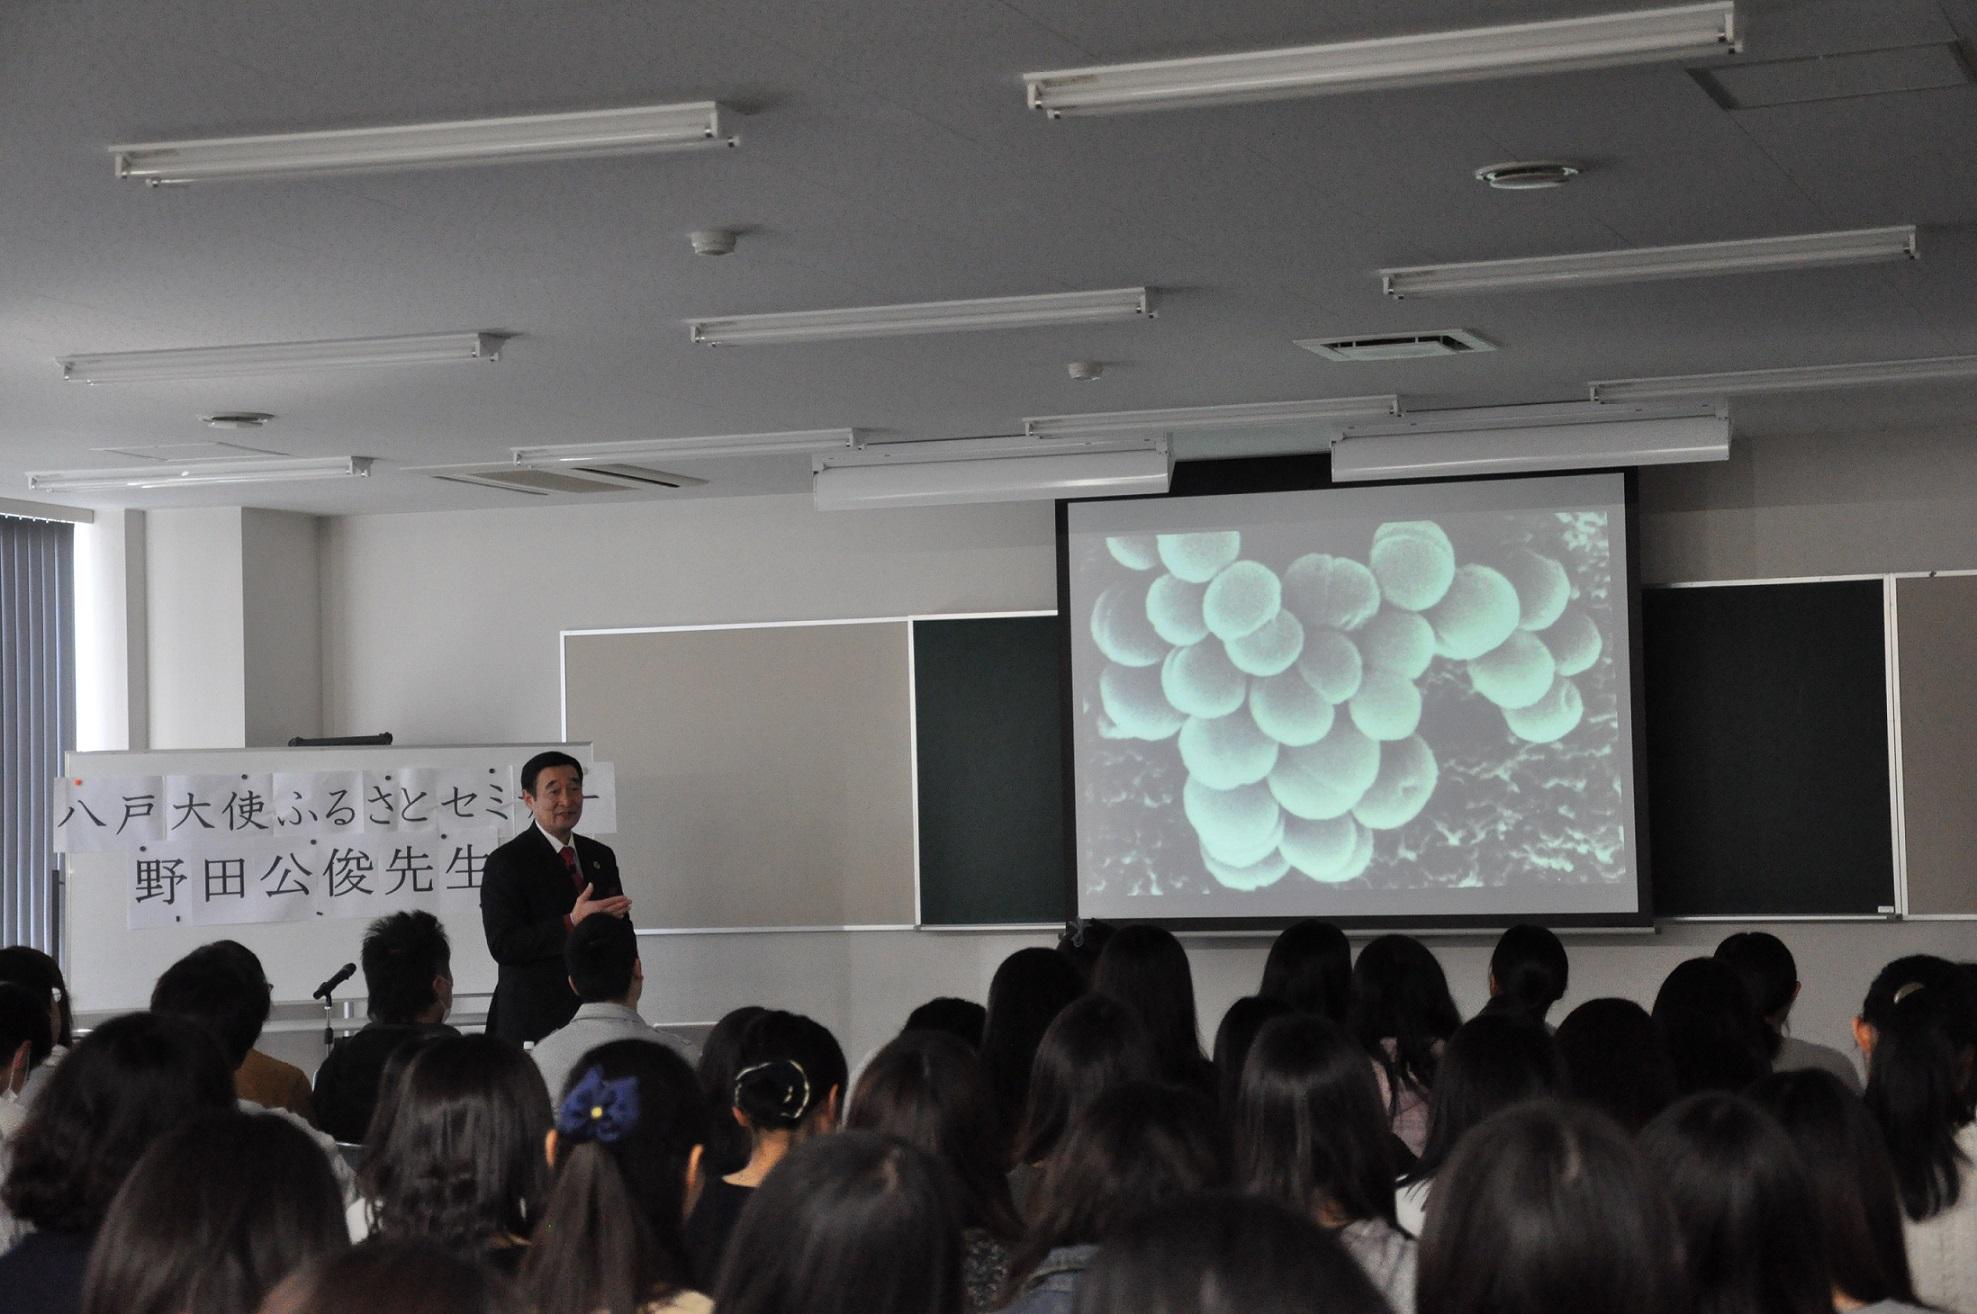 モニターに映された細菌の画像を見ながら話をしている野田先生と、着席して話を聞いている生徒たちの後姿の写真